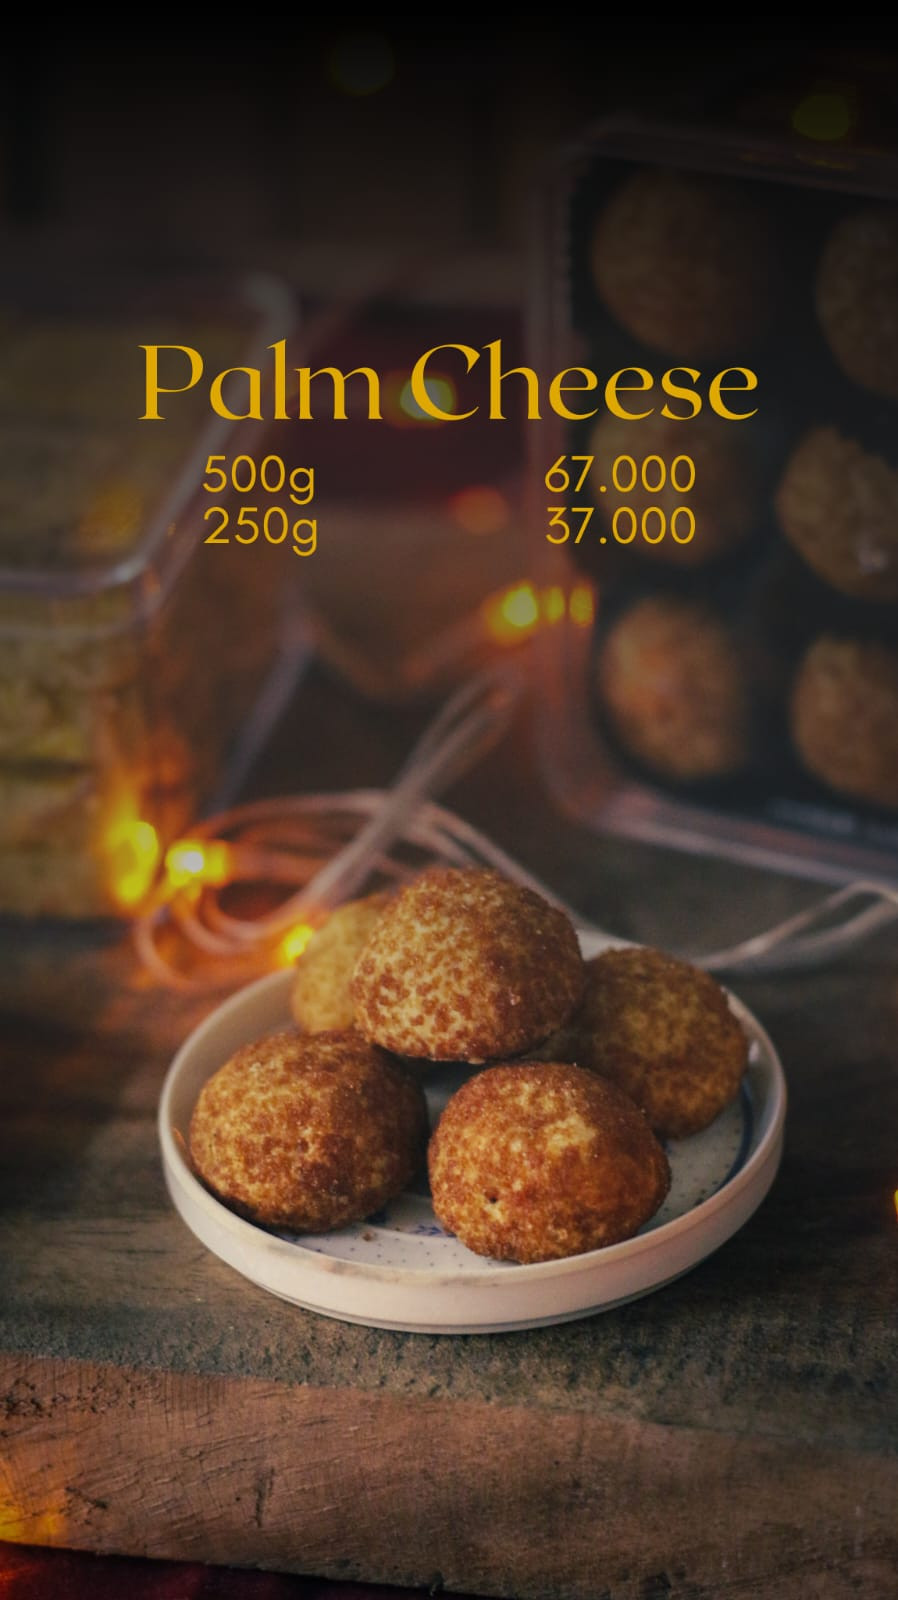 Palm Cheese 500g